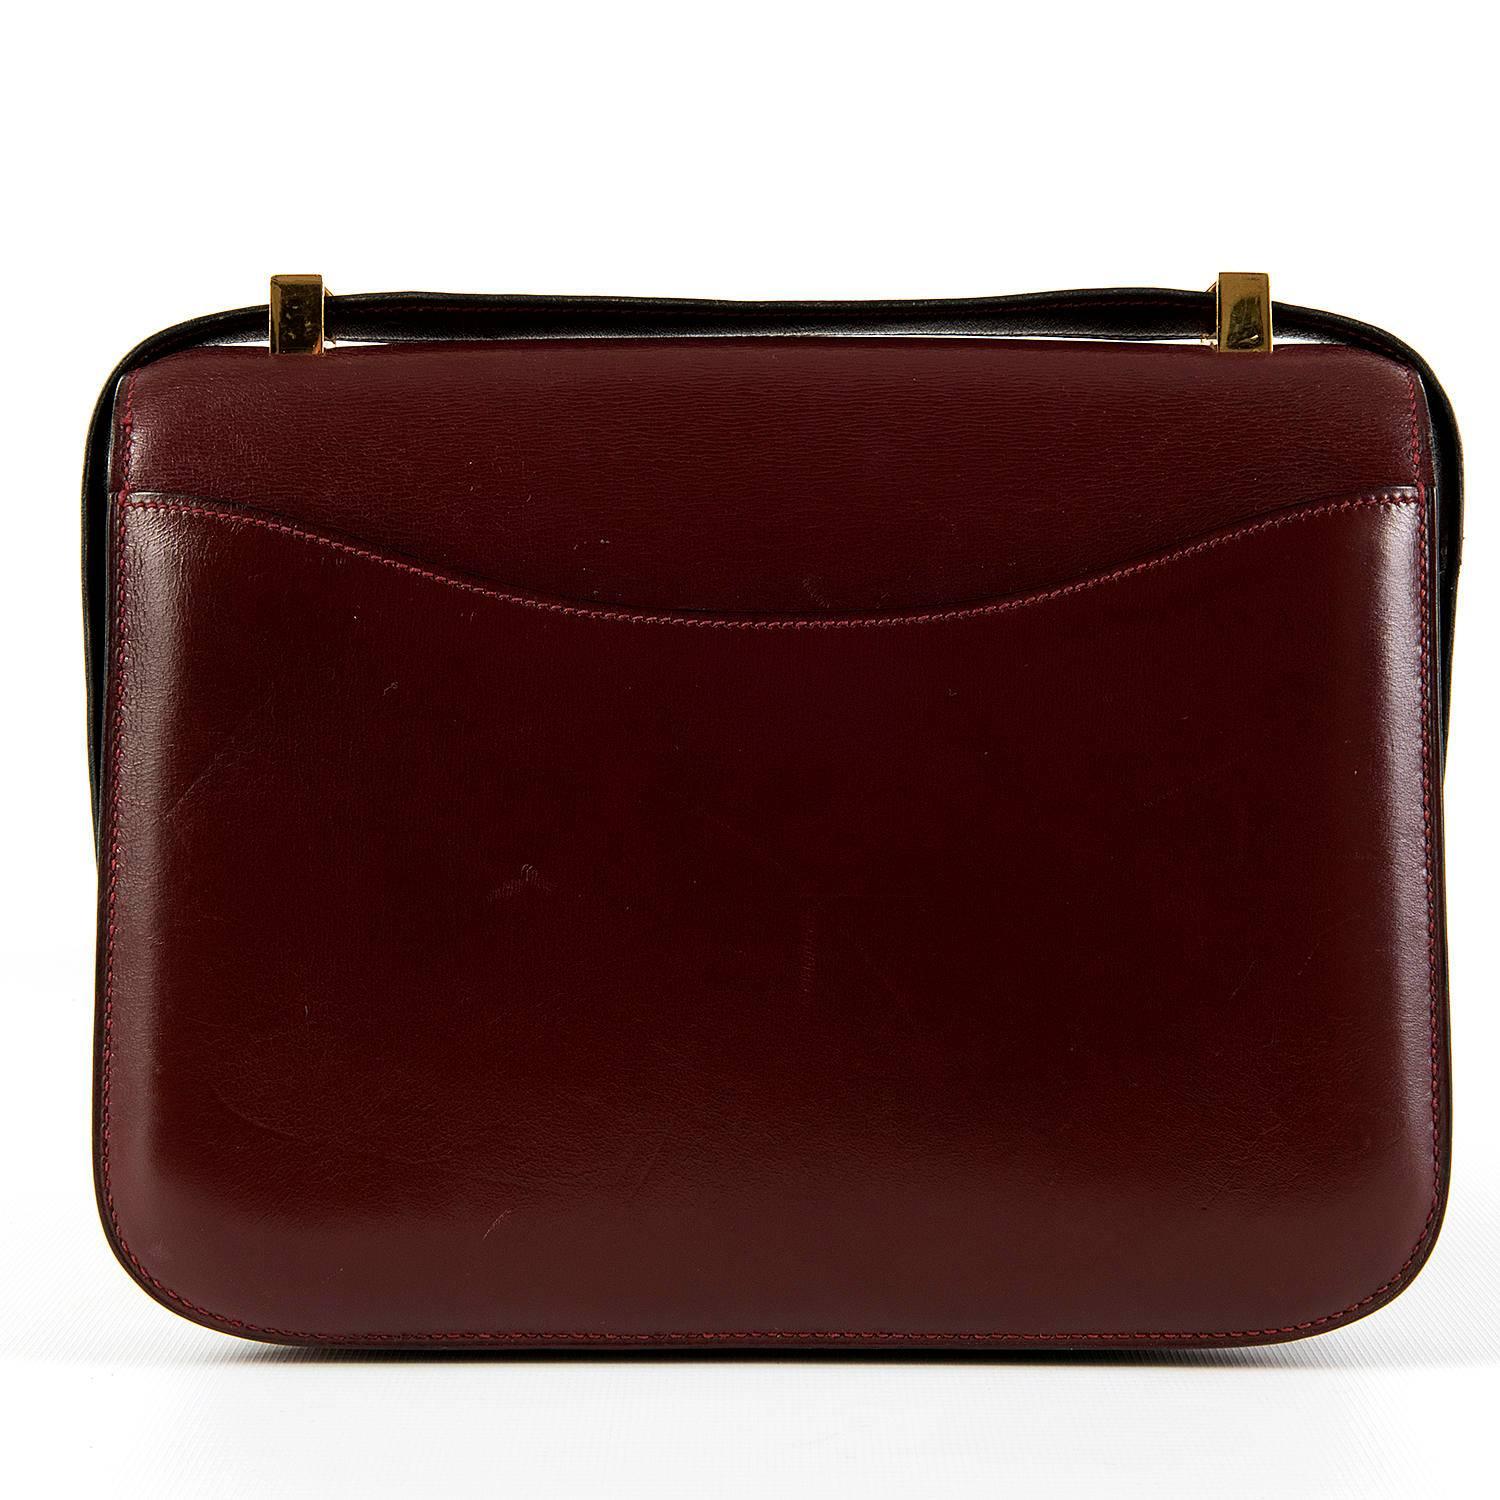 Black Pristine Classic Hermes 23cm Rouge H Constance Shoulder Bag with Gold Hardware